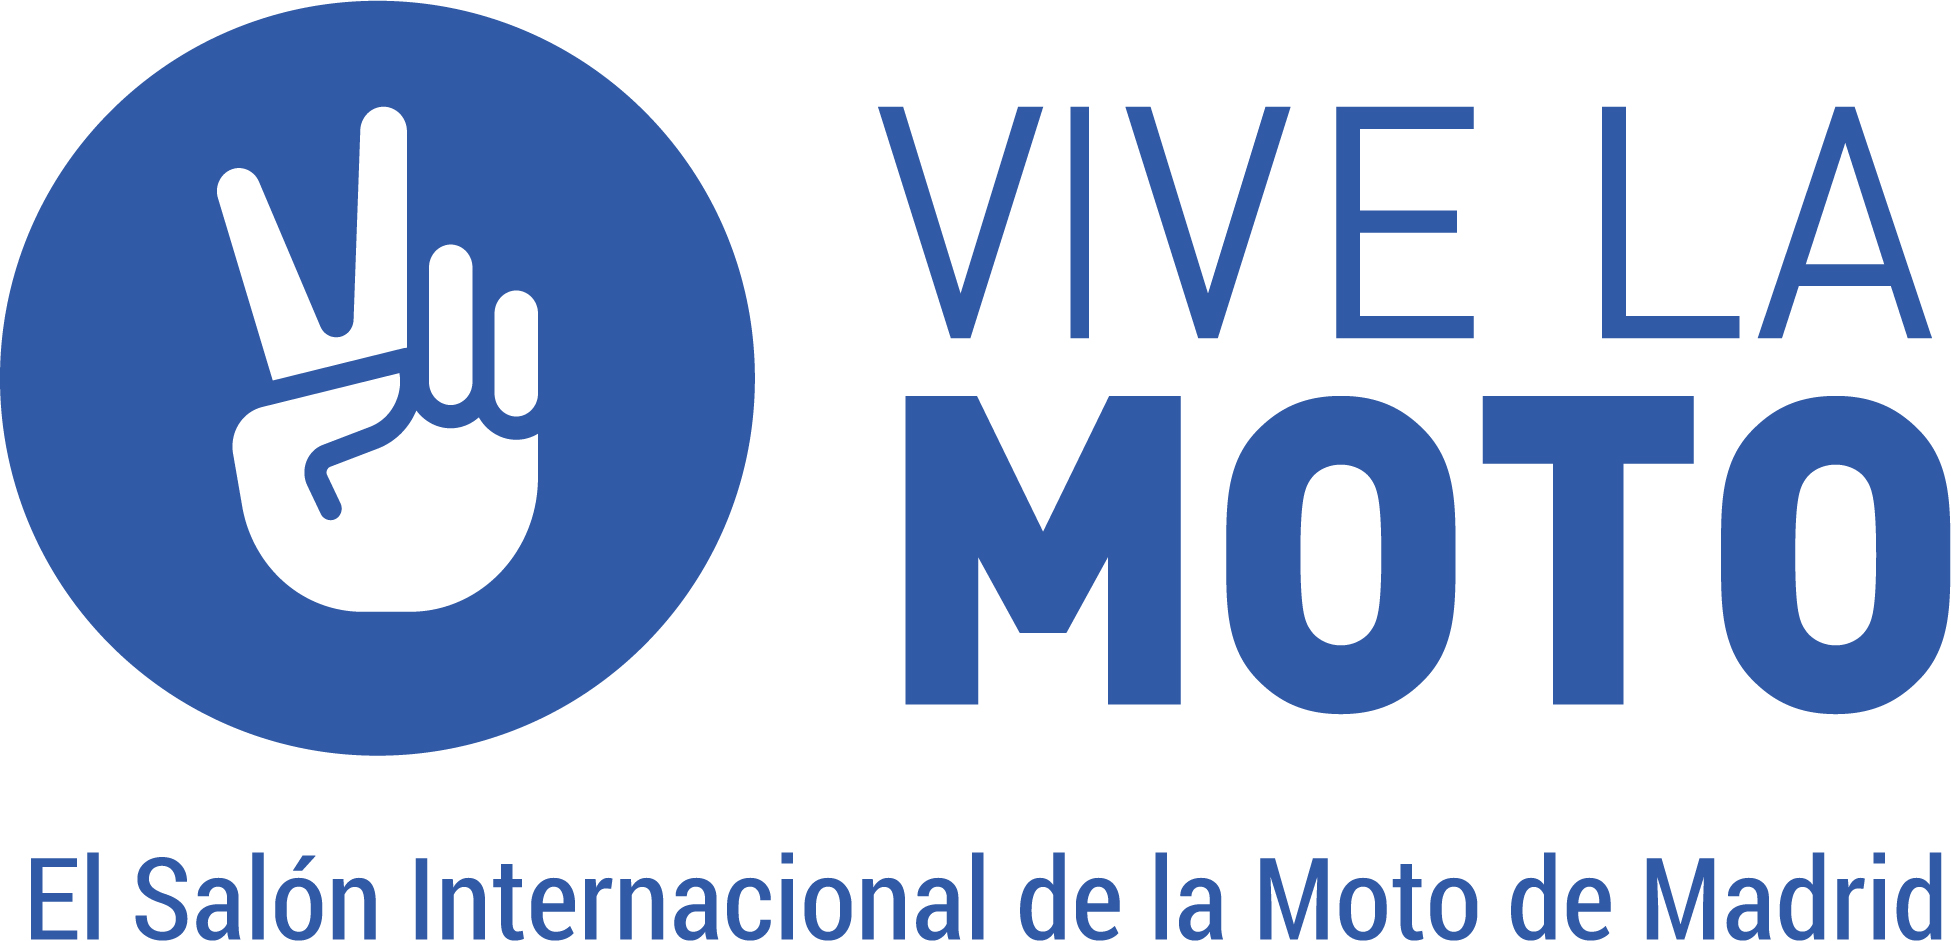 Salón Internacional Vive La Moto